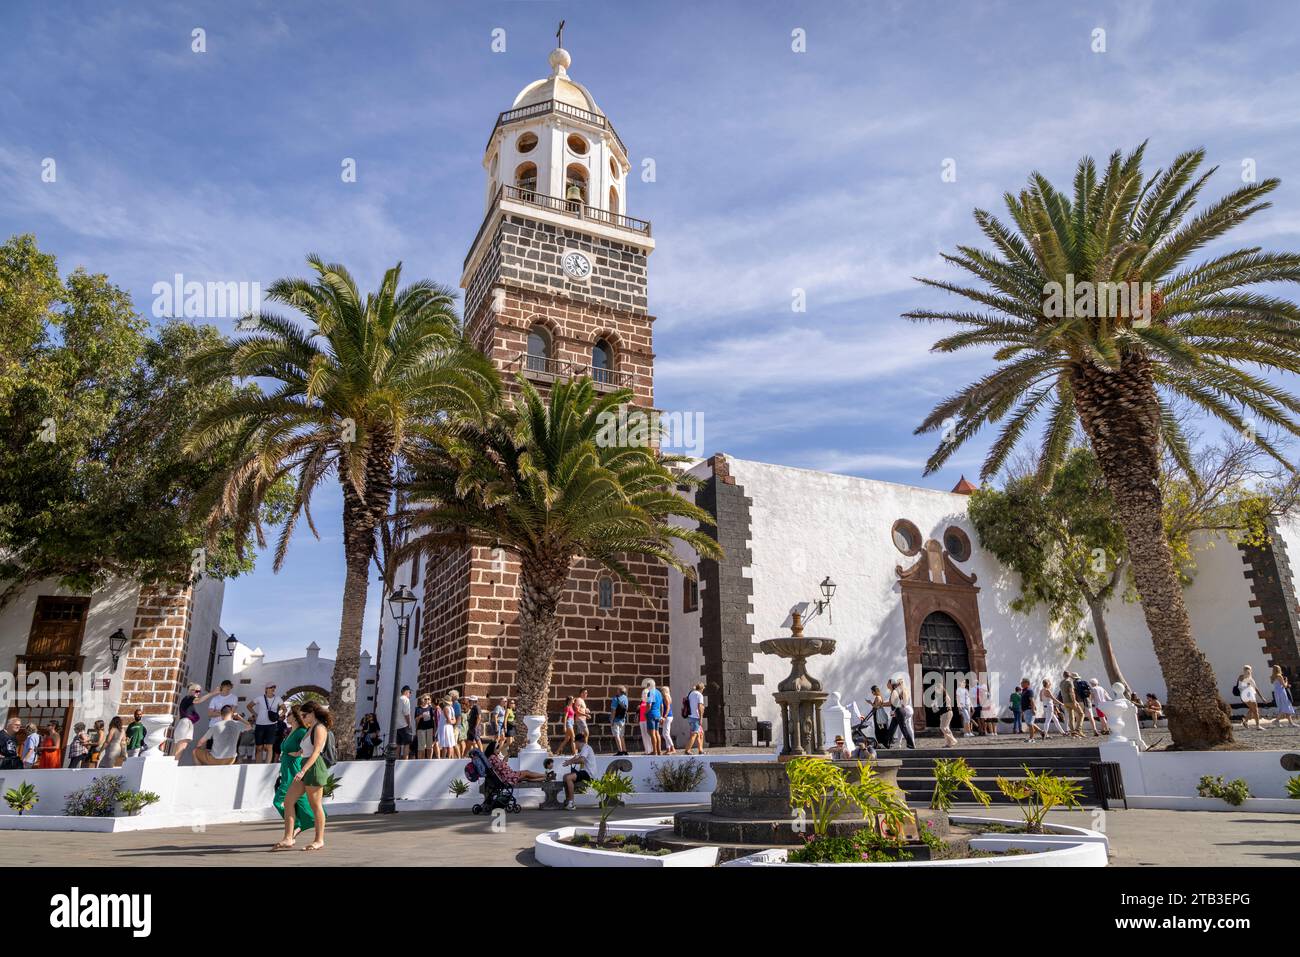 Street views of the Iglesia de Nuestra Señora de Guadalupe in the Plaza de la Constitución, Teguise Village, Lanzarote, Canary Islands, Spain. Stock Photo